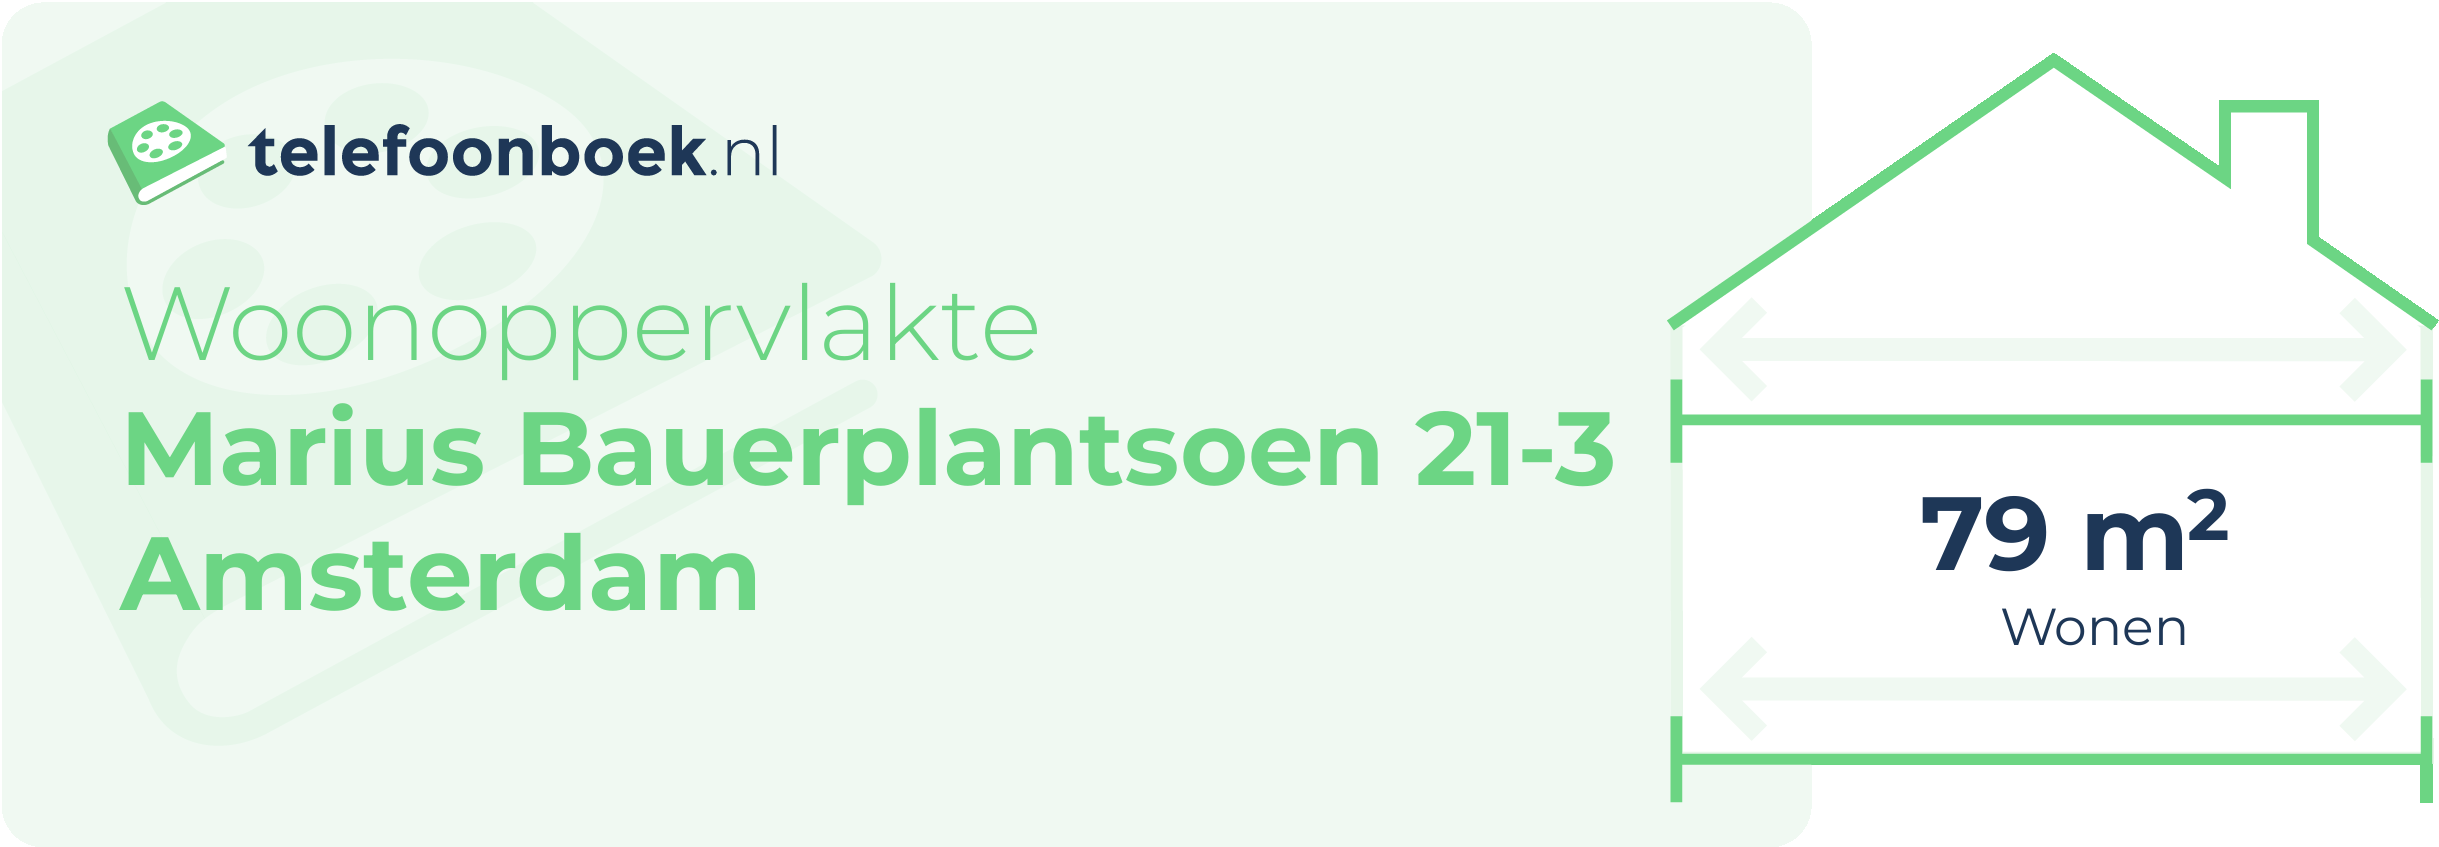 Woonoppervlakte Marius Bauerplantsoen 21-3 Amsterdam